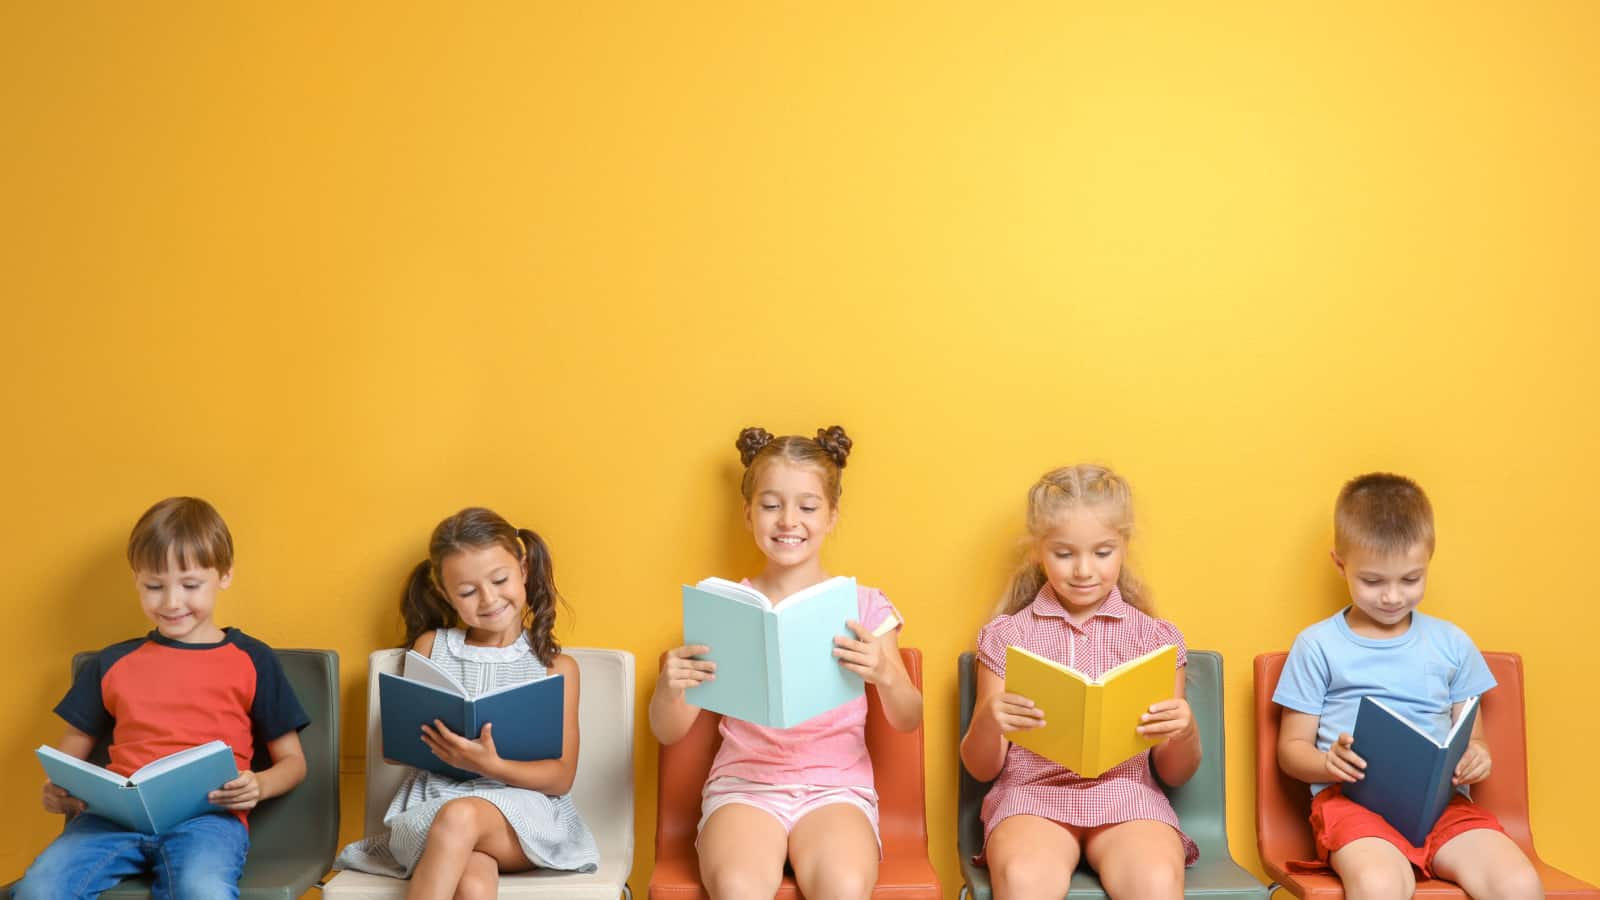 Ấm cúng với một bài đọc hay: 15 cuốn sách mùa thu mà con bạn sẽ thích đọc